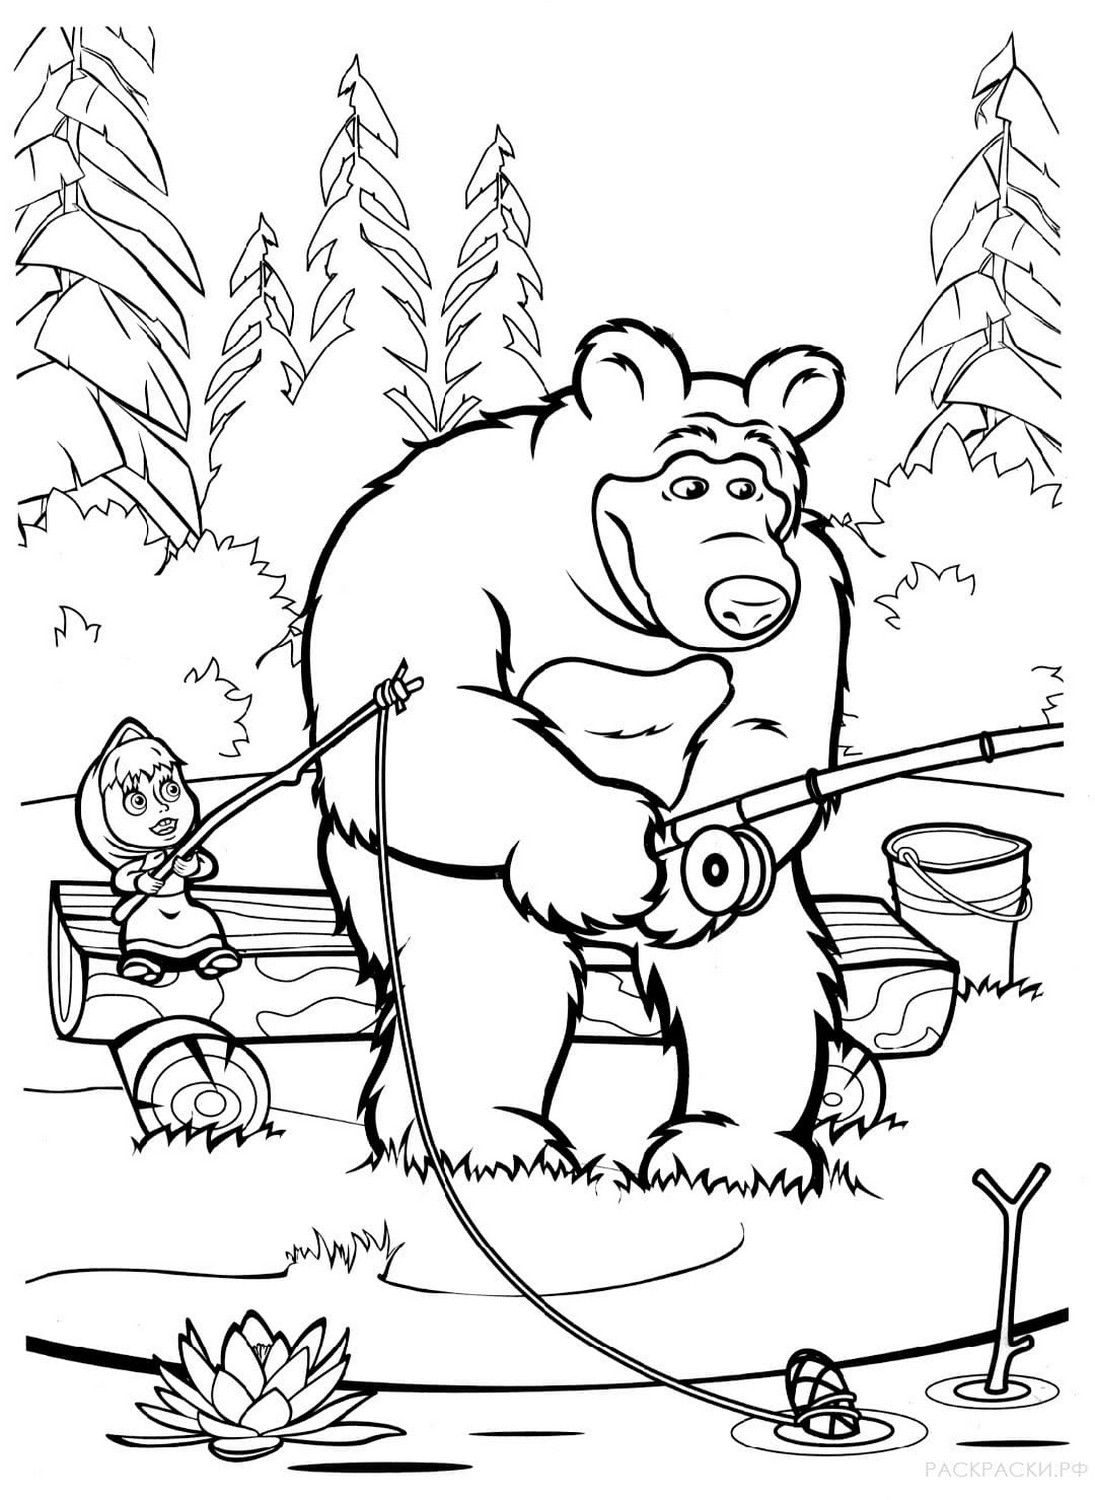 玛莎和熊的绘图 46 进行打印和着色